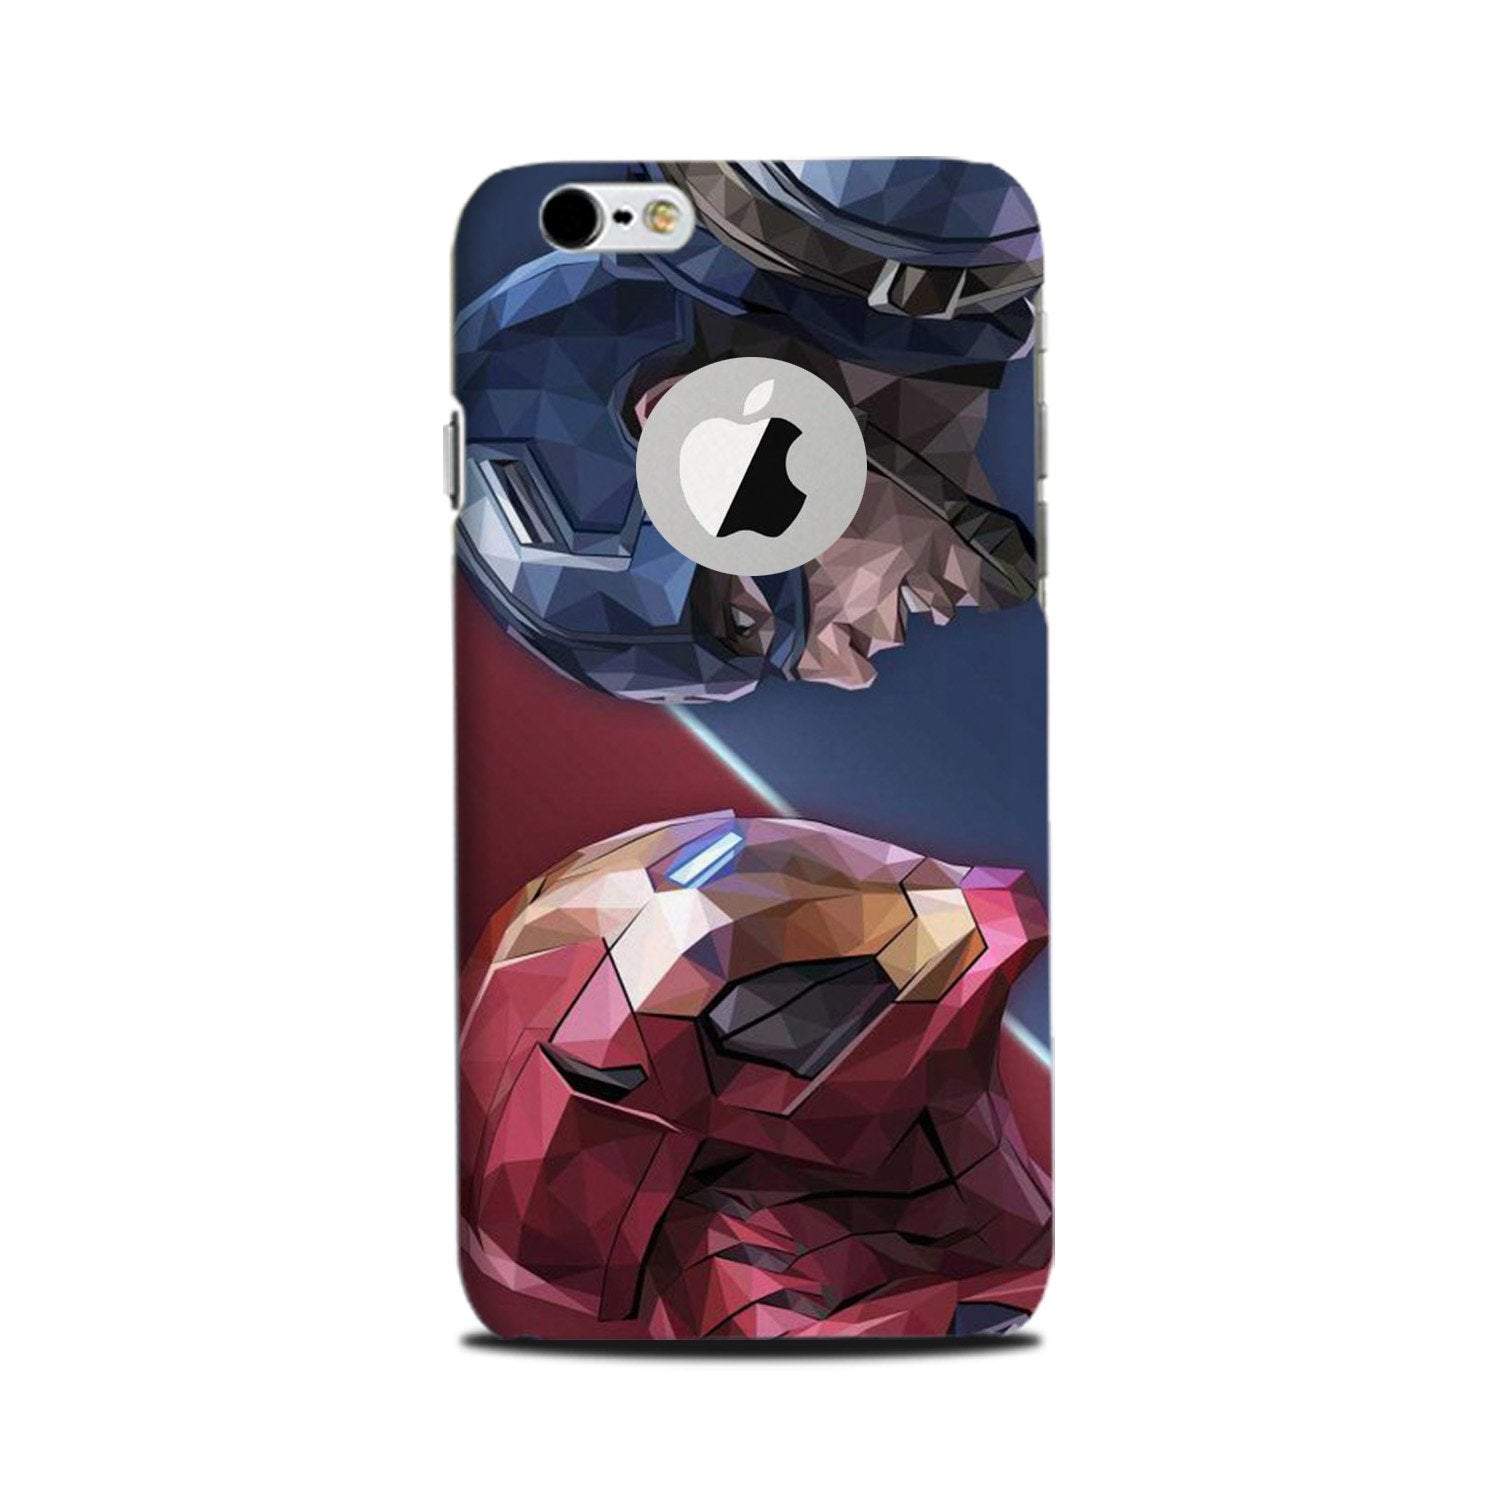 Ironman Captain America Case for iPhone 6 Plus / 6s Plus logo cut  (Design No. 245)